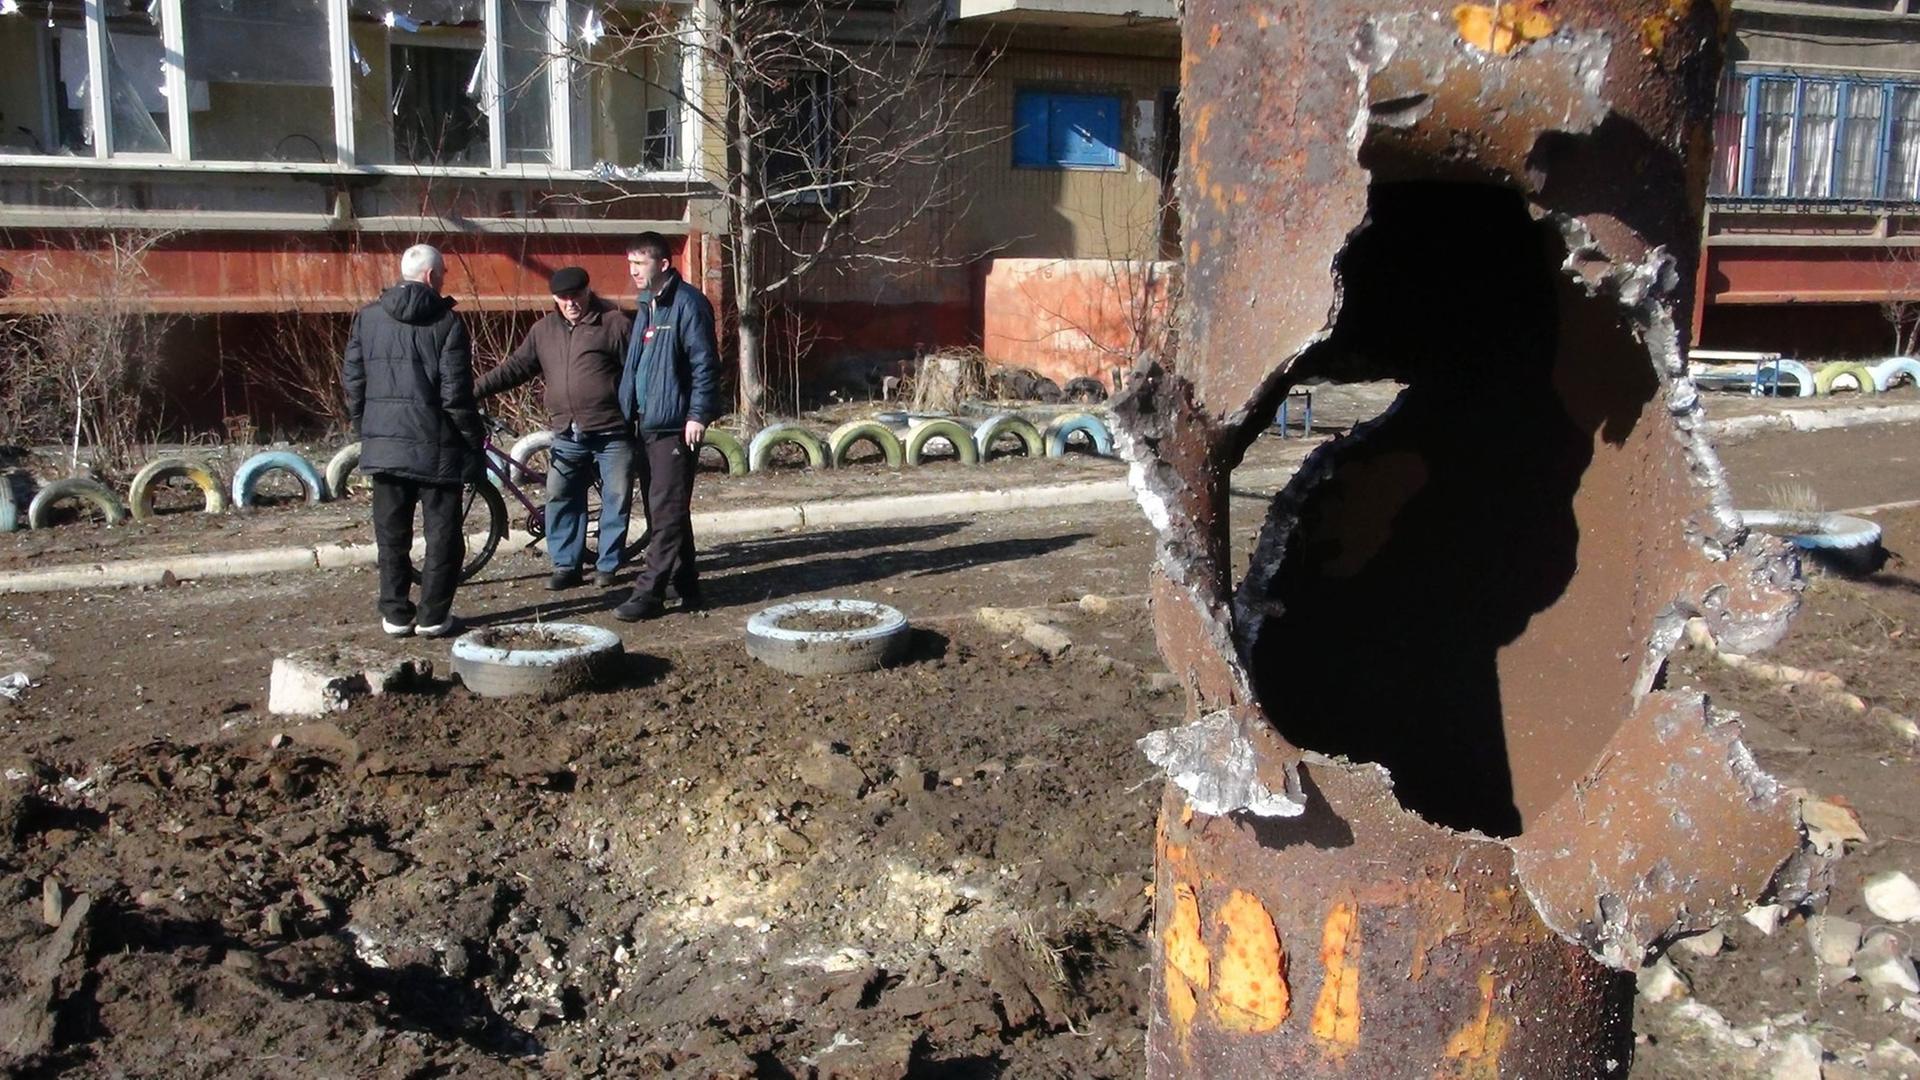 Männer stehen in einer offenbar durch Waffenbeschuss zerstörten Gegend in Donezk.